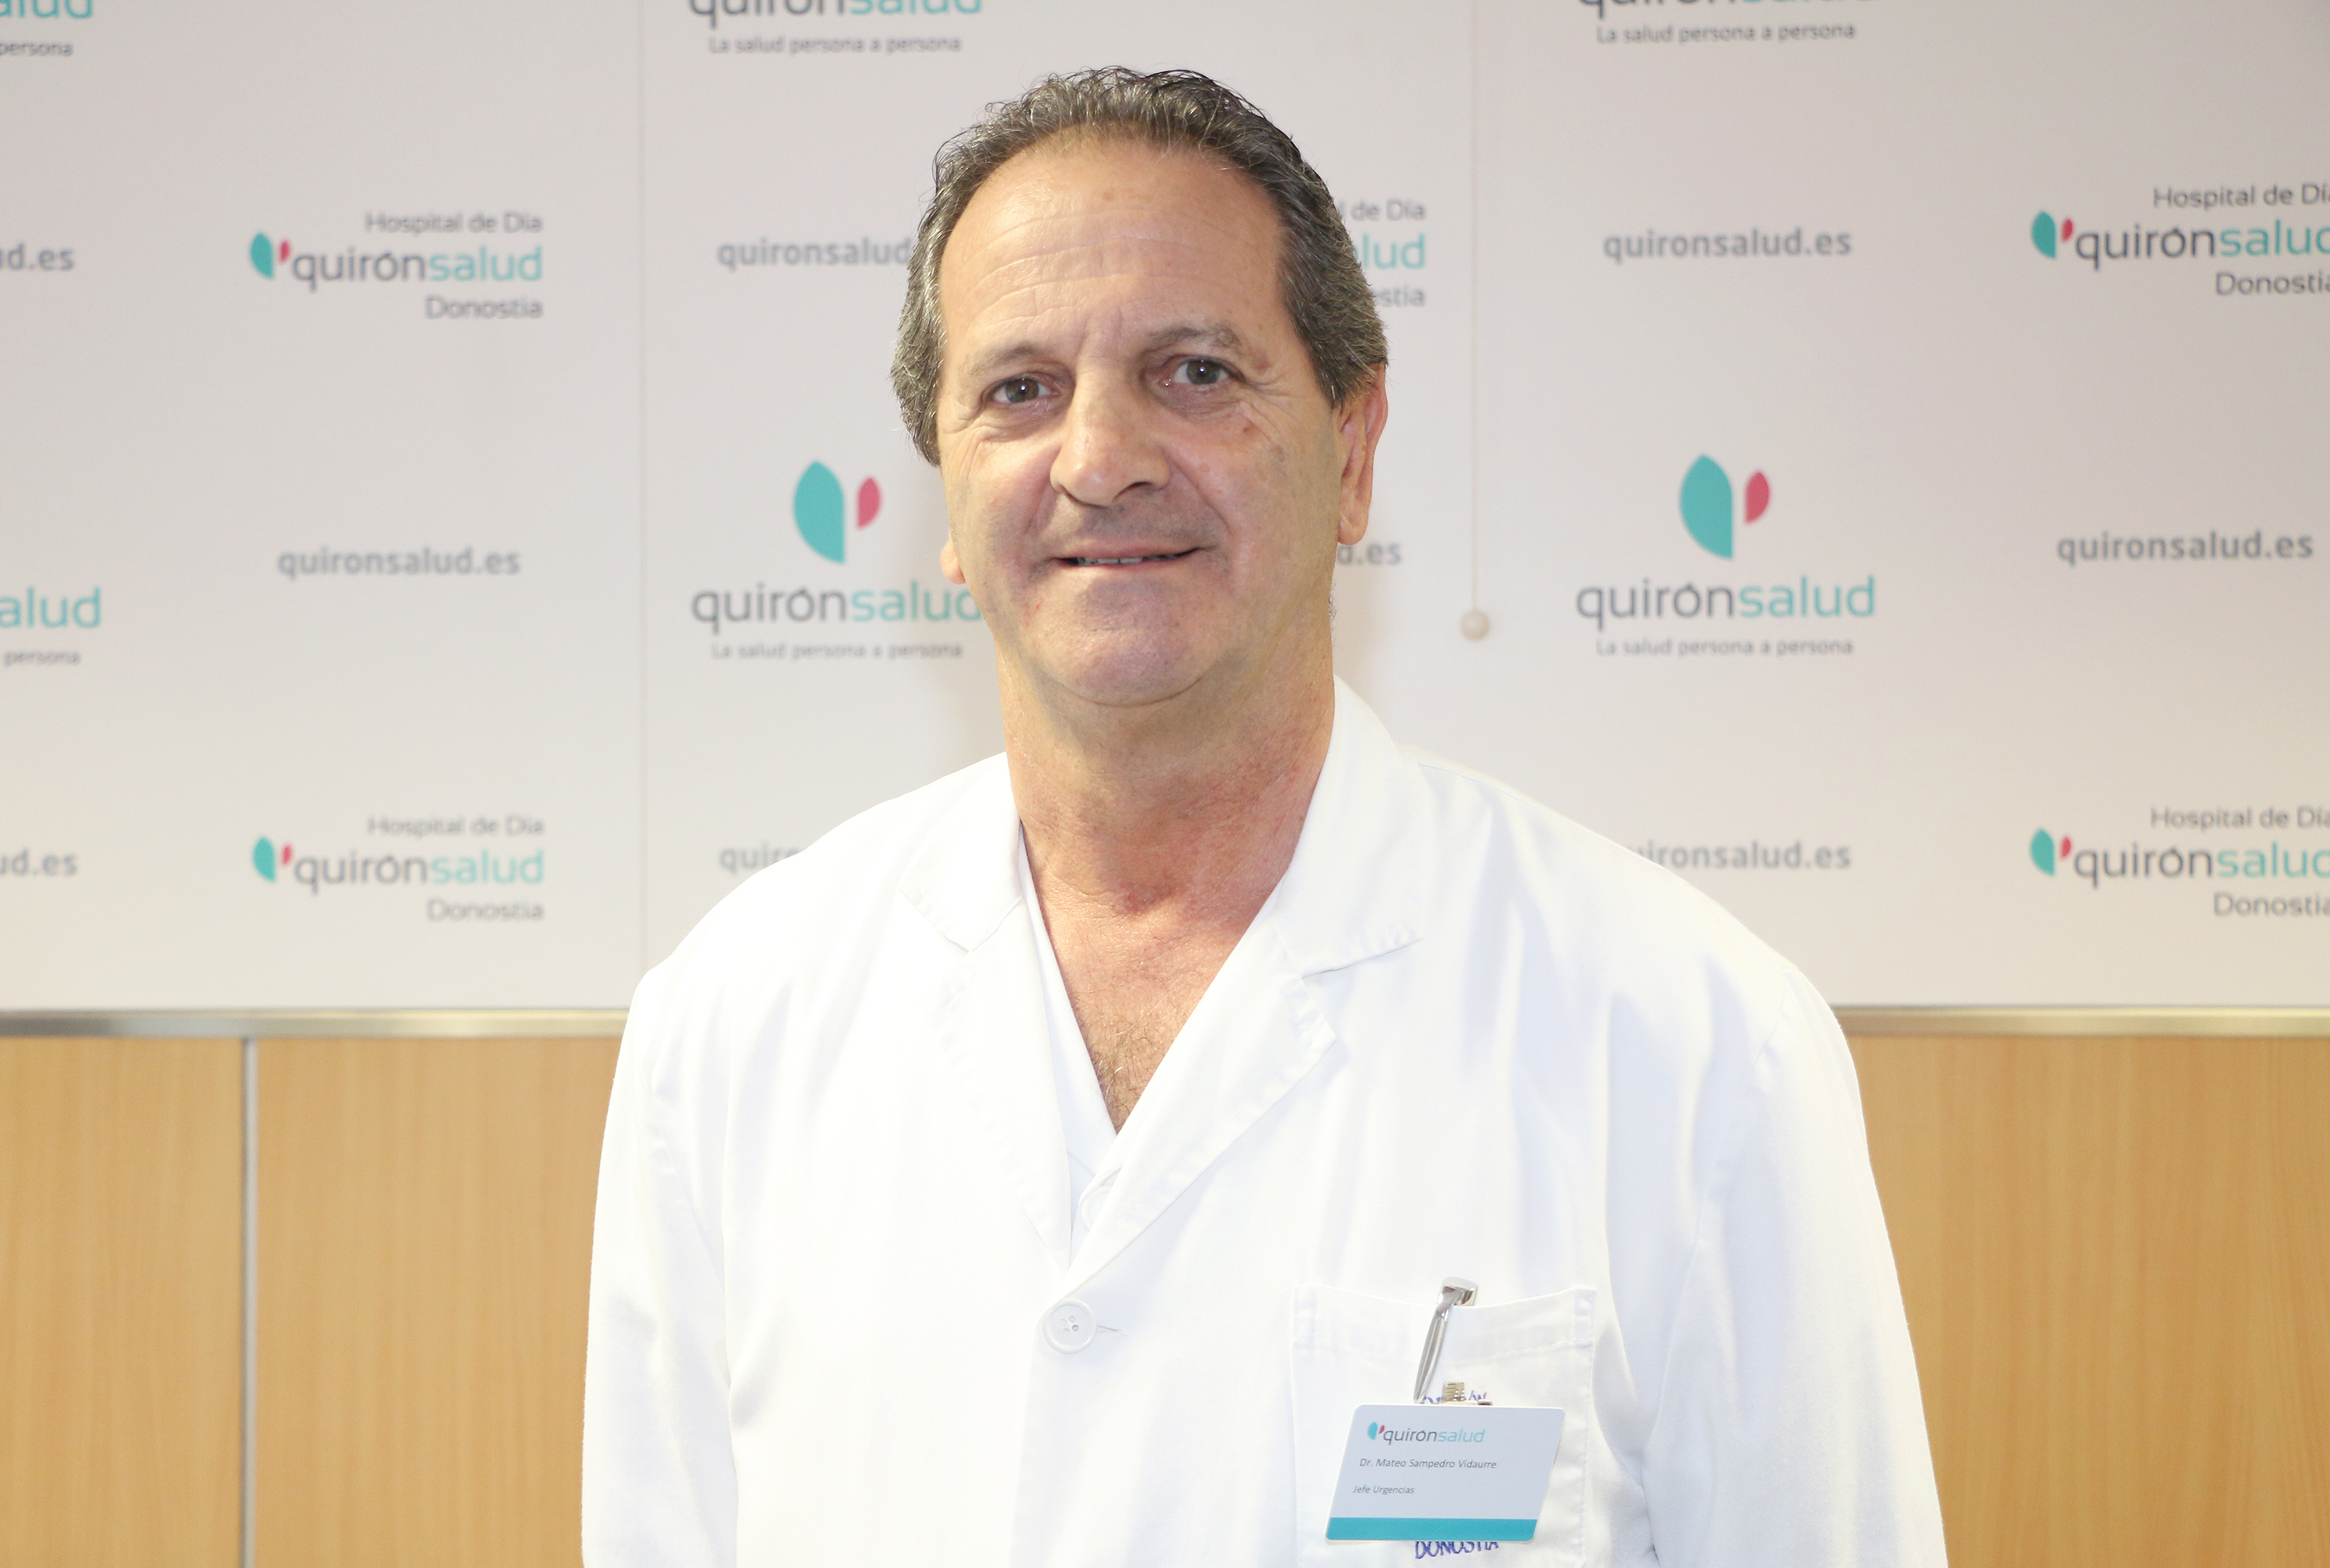 dr_sampedro_urgencias_hospital_de_dia_quironsalud_donostia_1